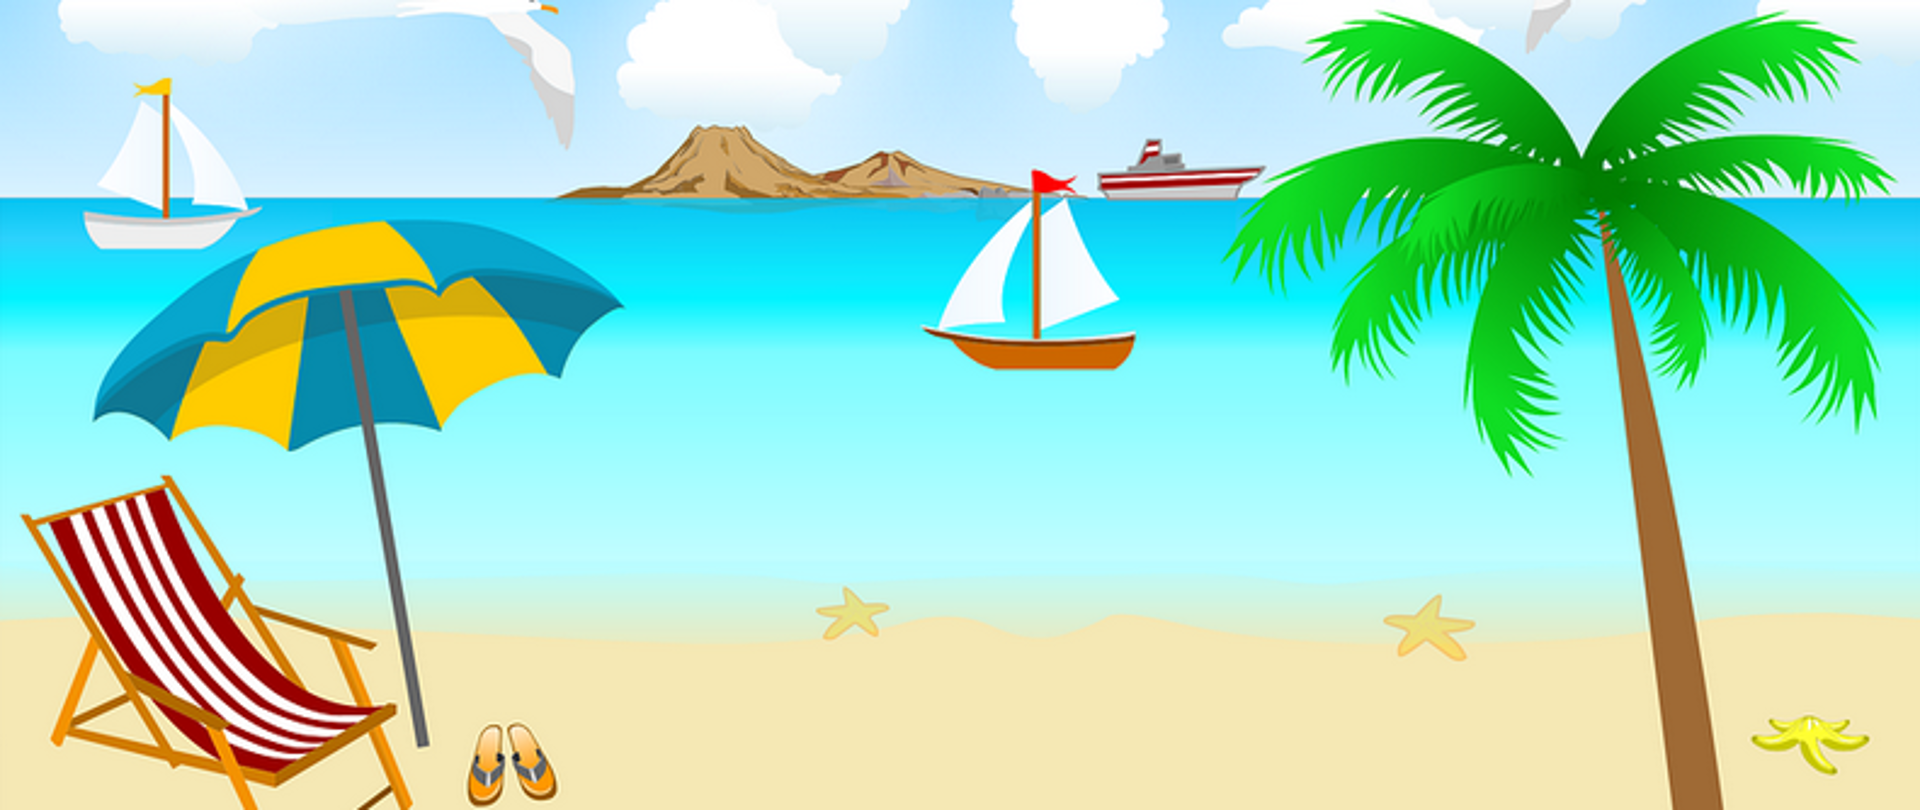 Grafika przedstawie plażę, na której widoczny jest leżak wraz z parasolem oraz klapkami. Widoczna jest również palma, natomiast w tle znajduje się wyspa, statek oraz żaglówki.